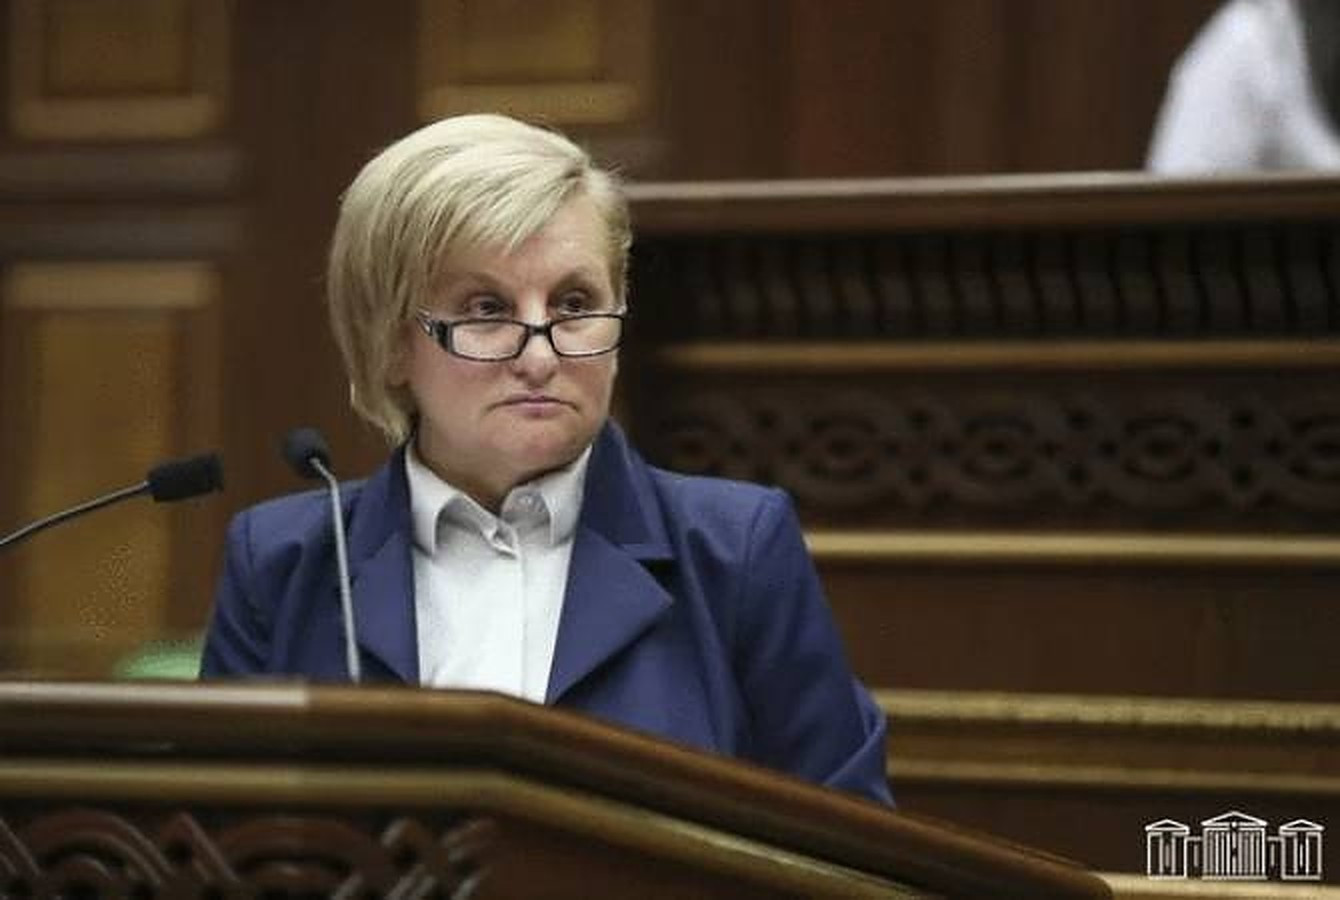 Majelis Nasional tidak akan mengajukan permohonan ke Mahkamah Agung tentang masalah penghentian kekuasaan Seda Safaryan – Berita dari Armenia